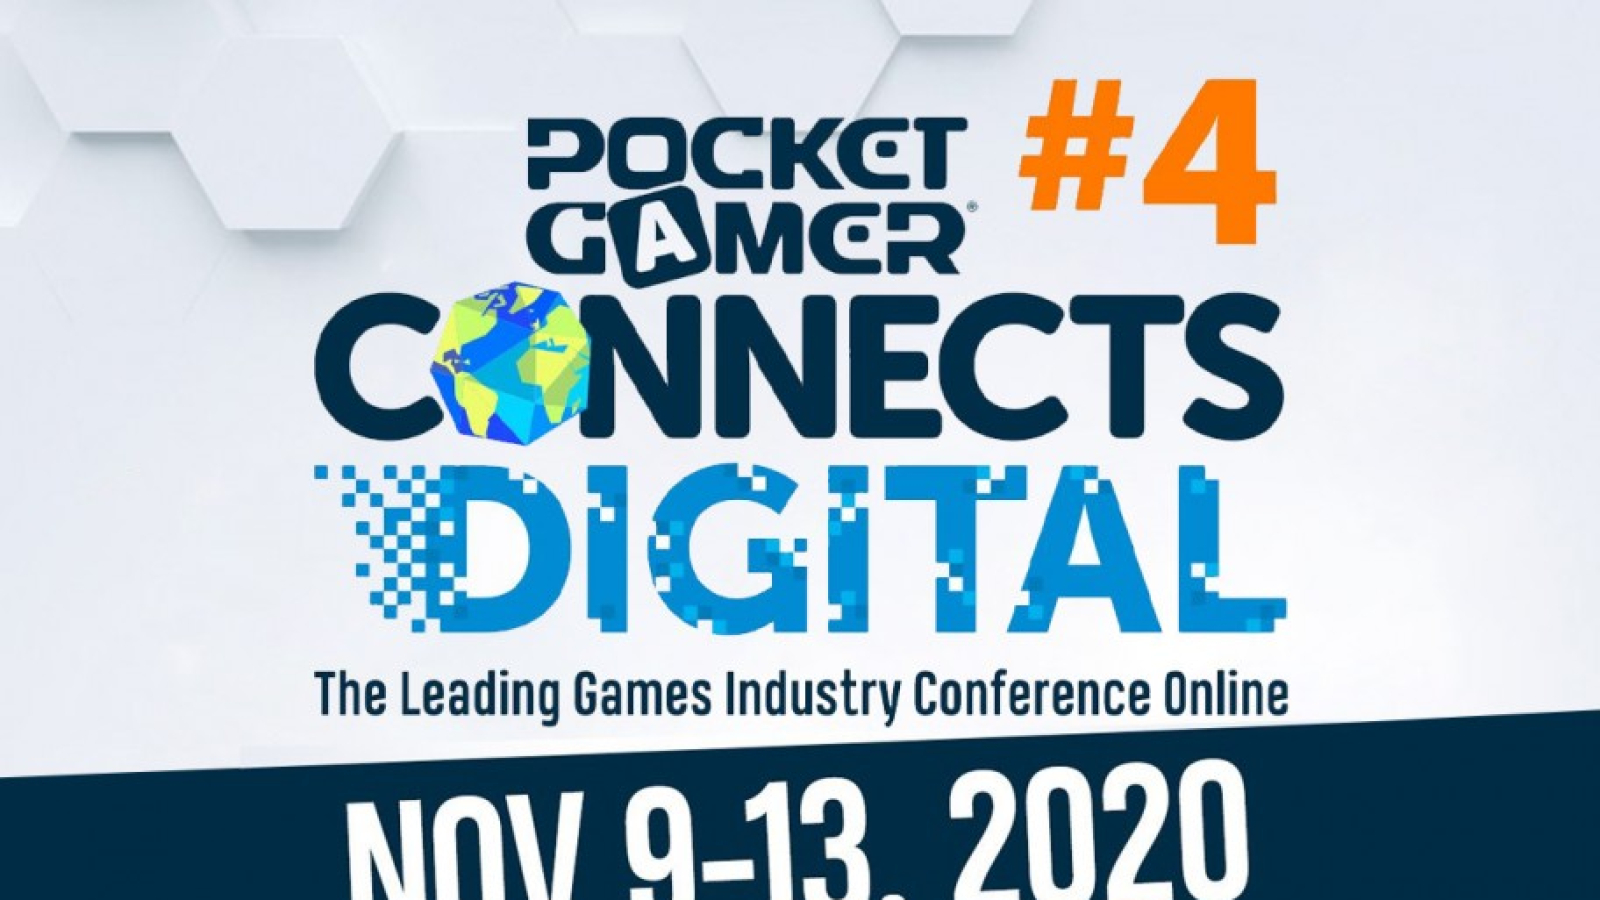 Pocket Gamer Connects Digital #4